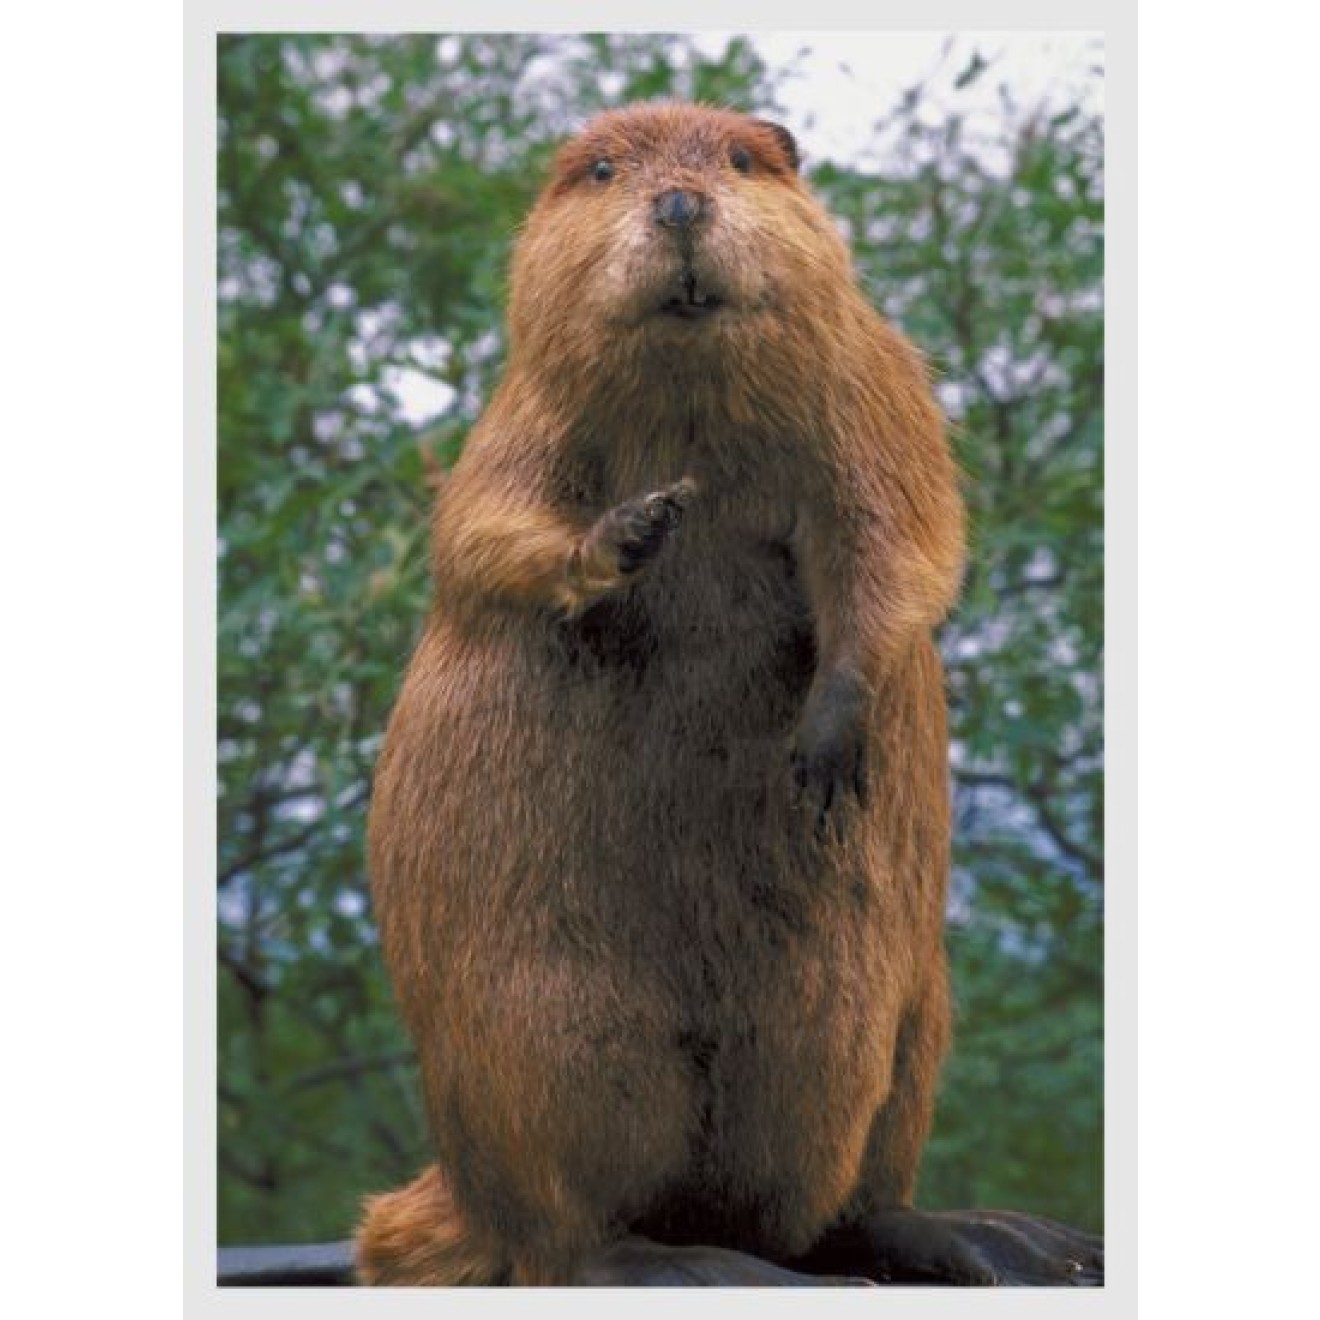 Beaver, otter